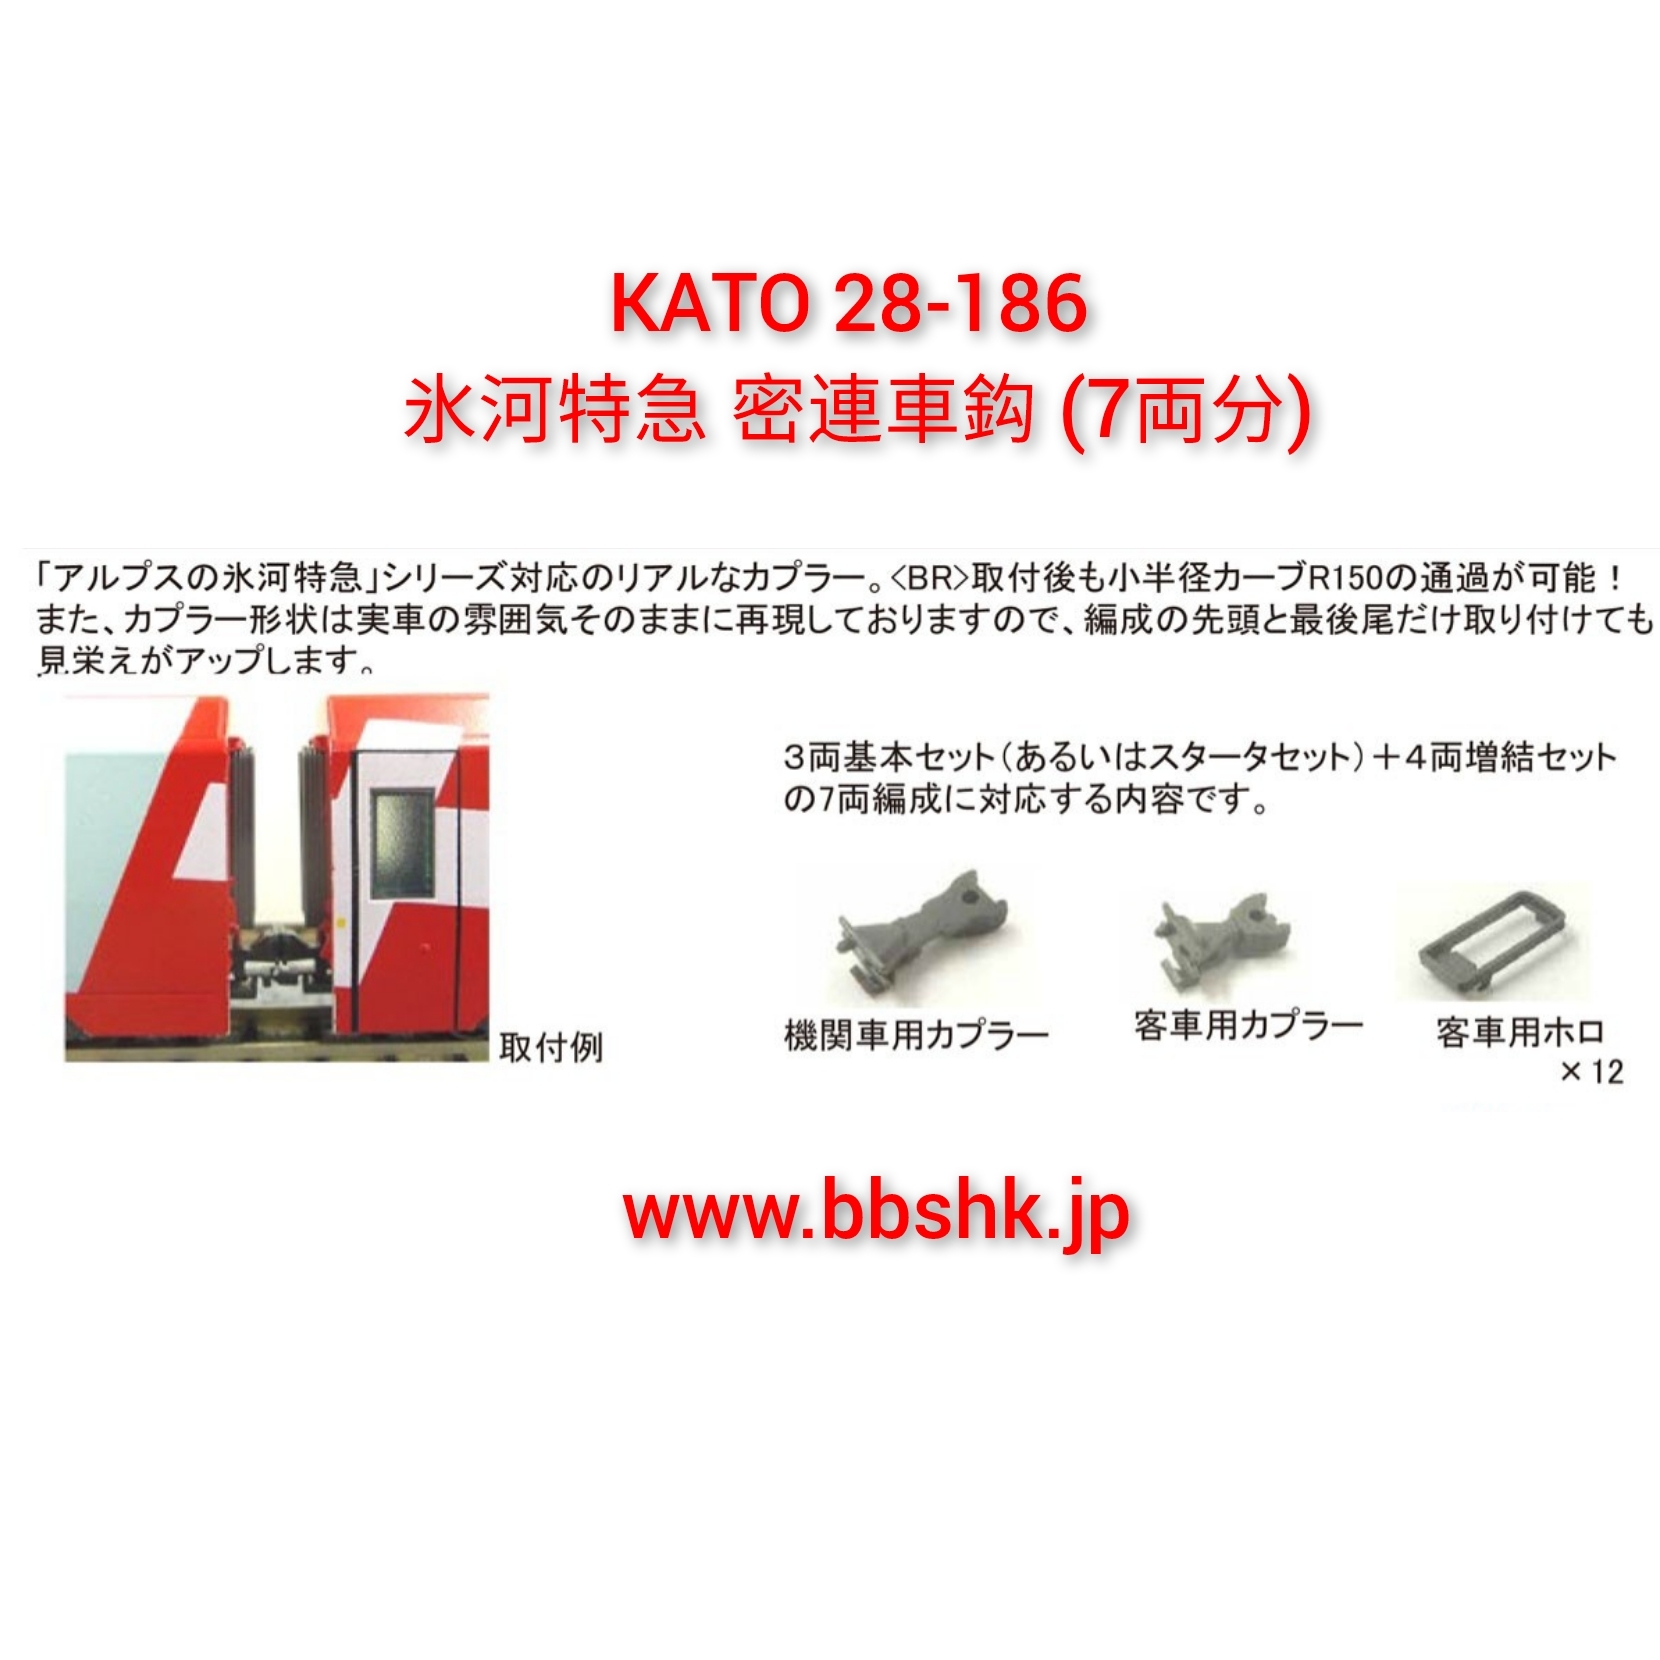 預訂> KATO 28-186 氷河特急密連形車鈎(7両分)